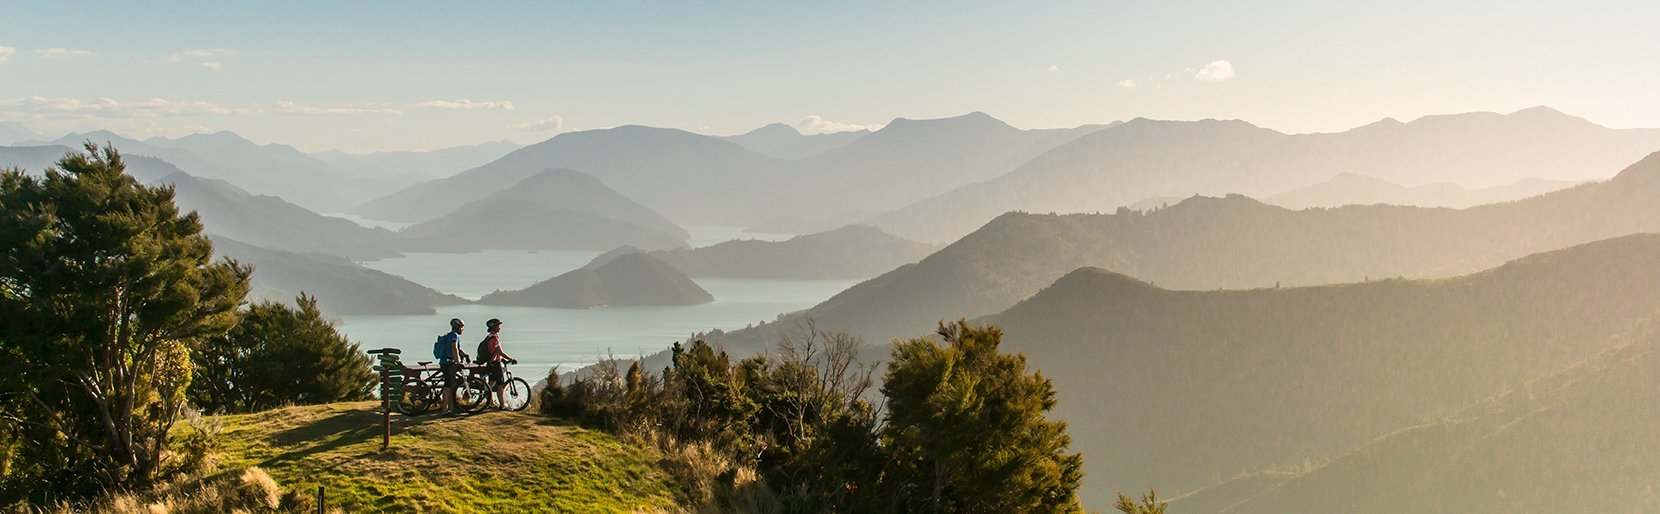 Nieuw-Zeeland twee fietsers kijken uit over het dal